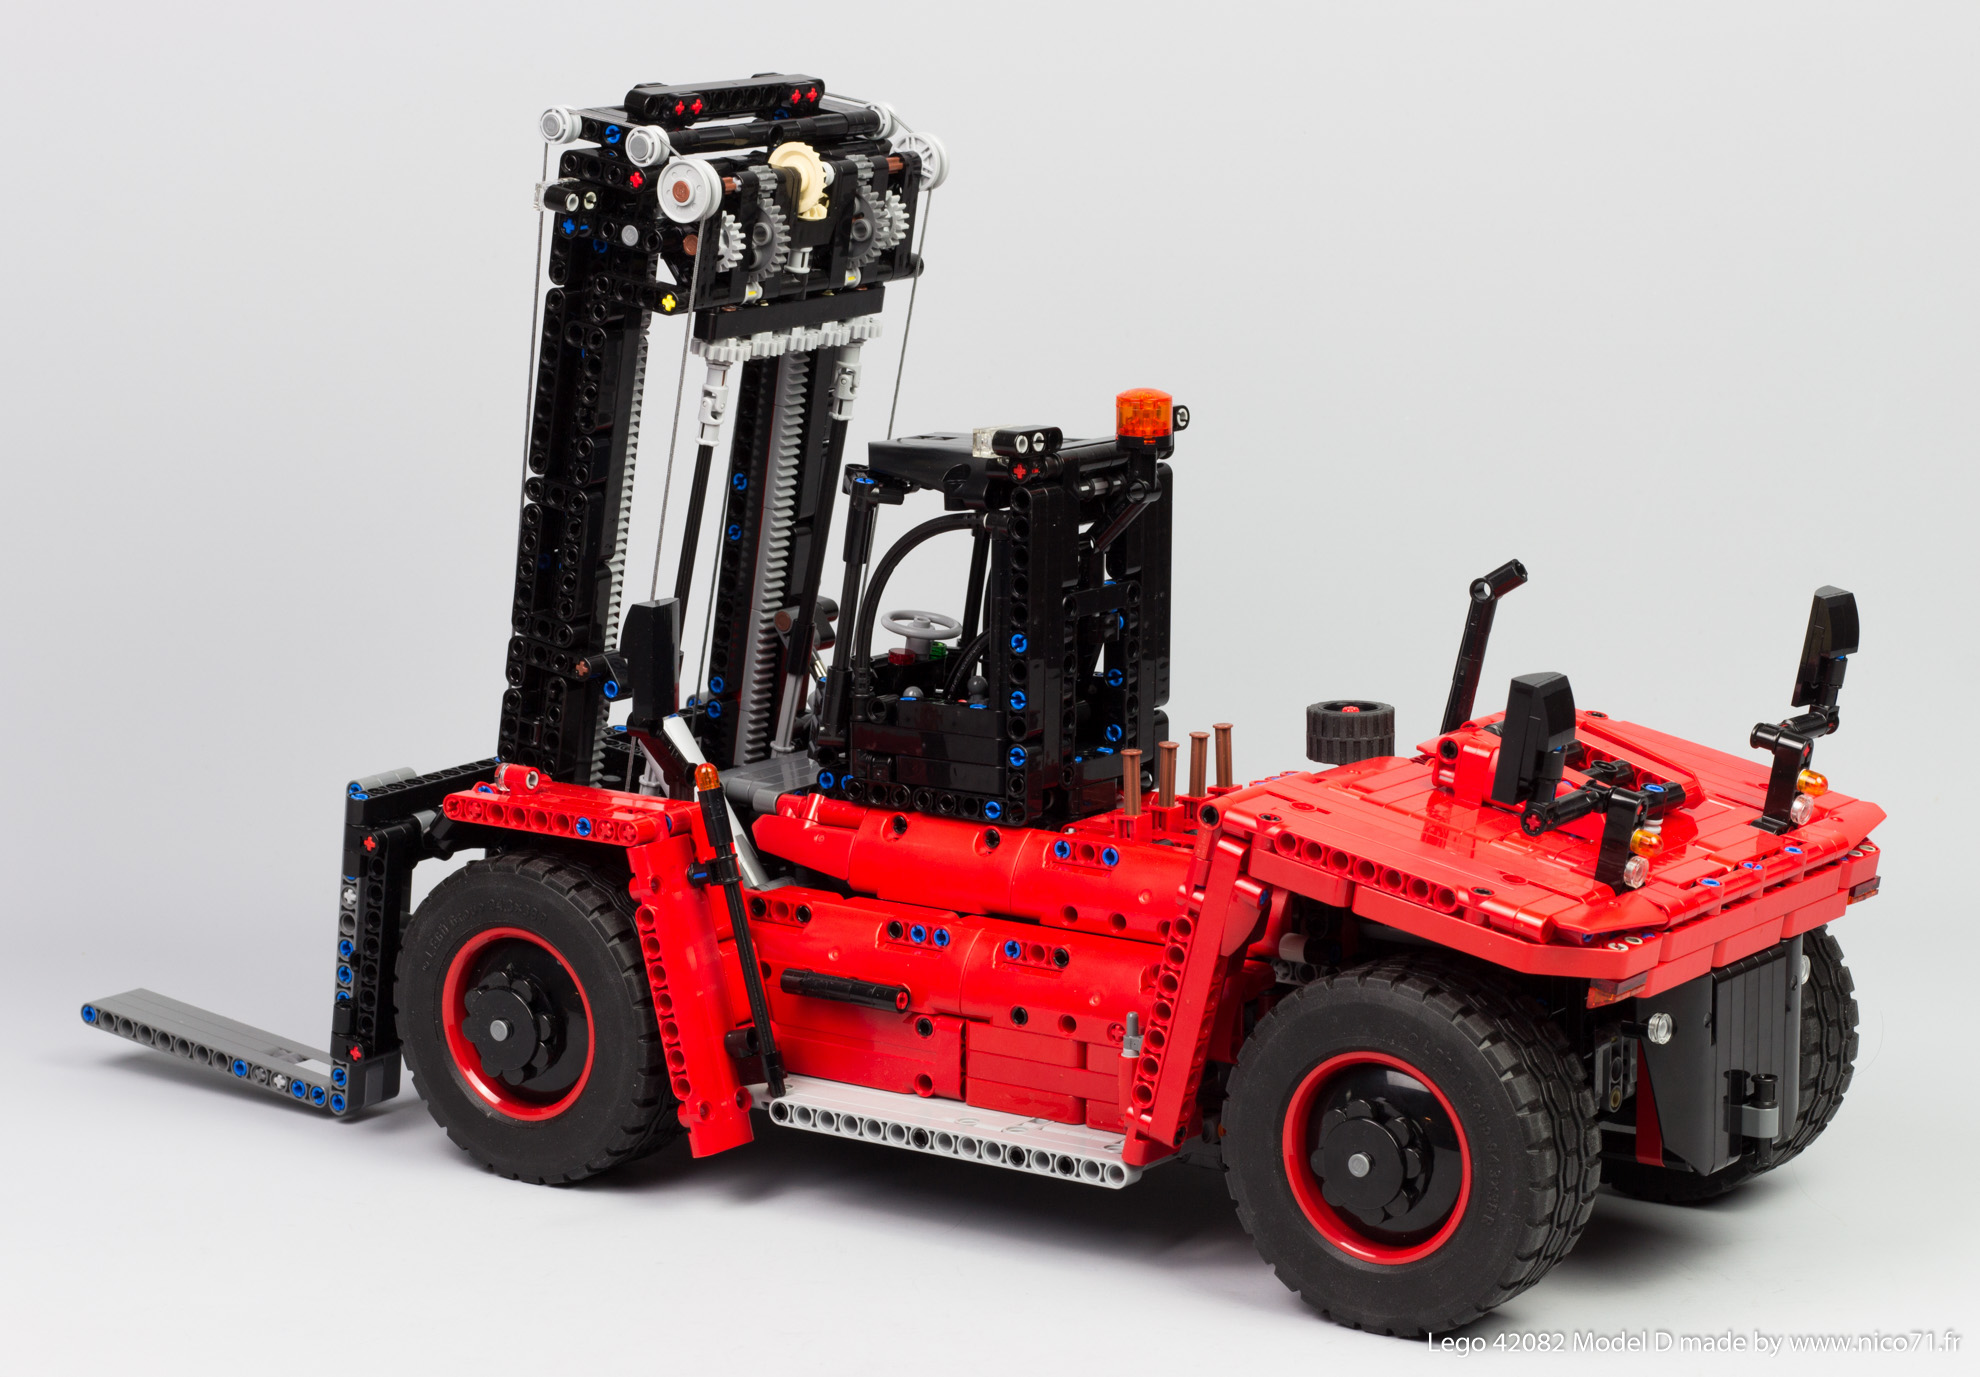 lego-42082-model-d-heavy-forklift-3.jpg